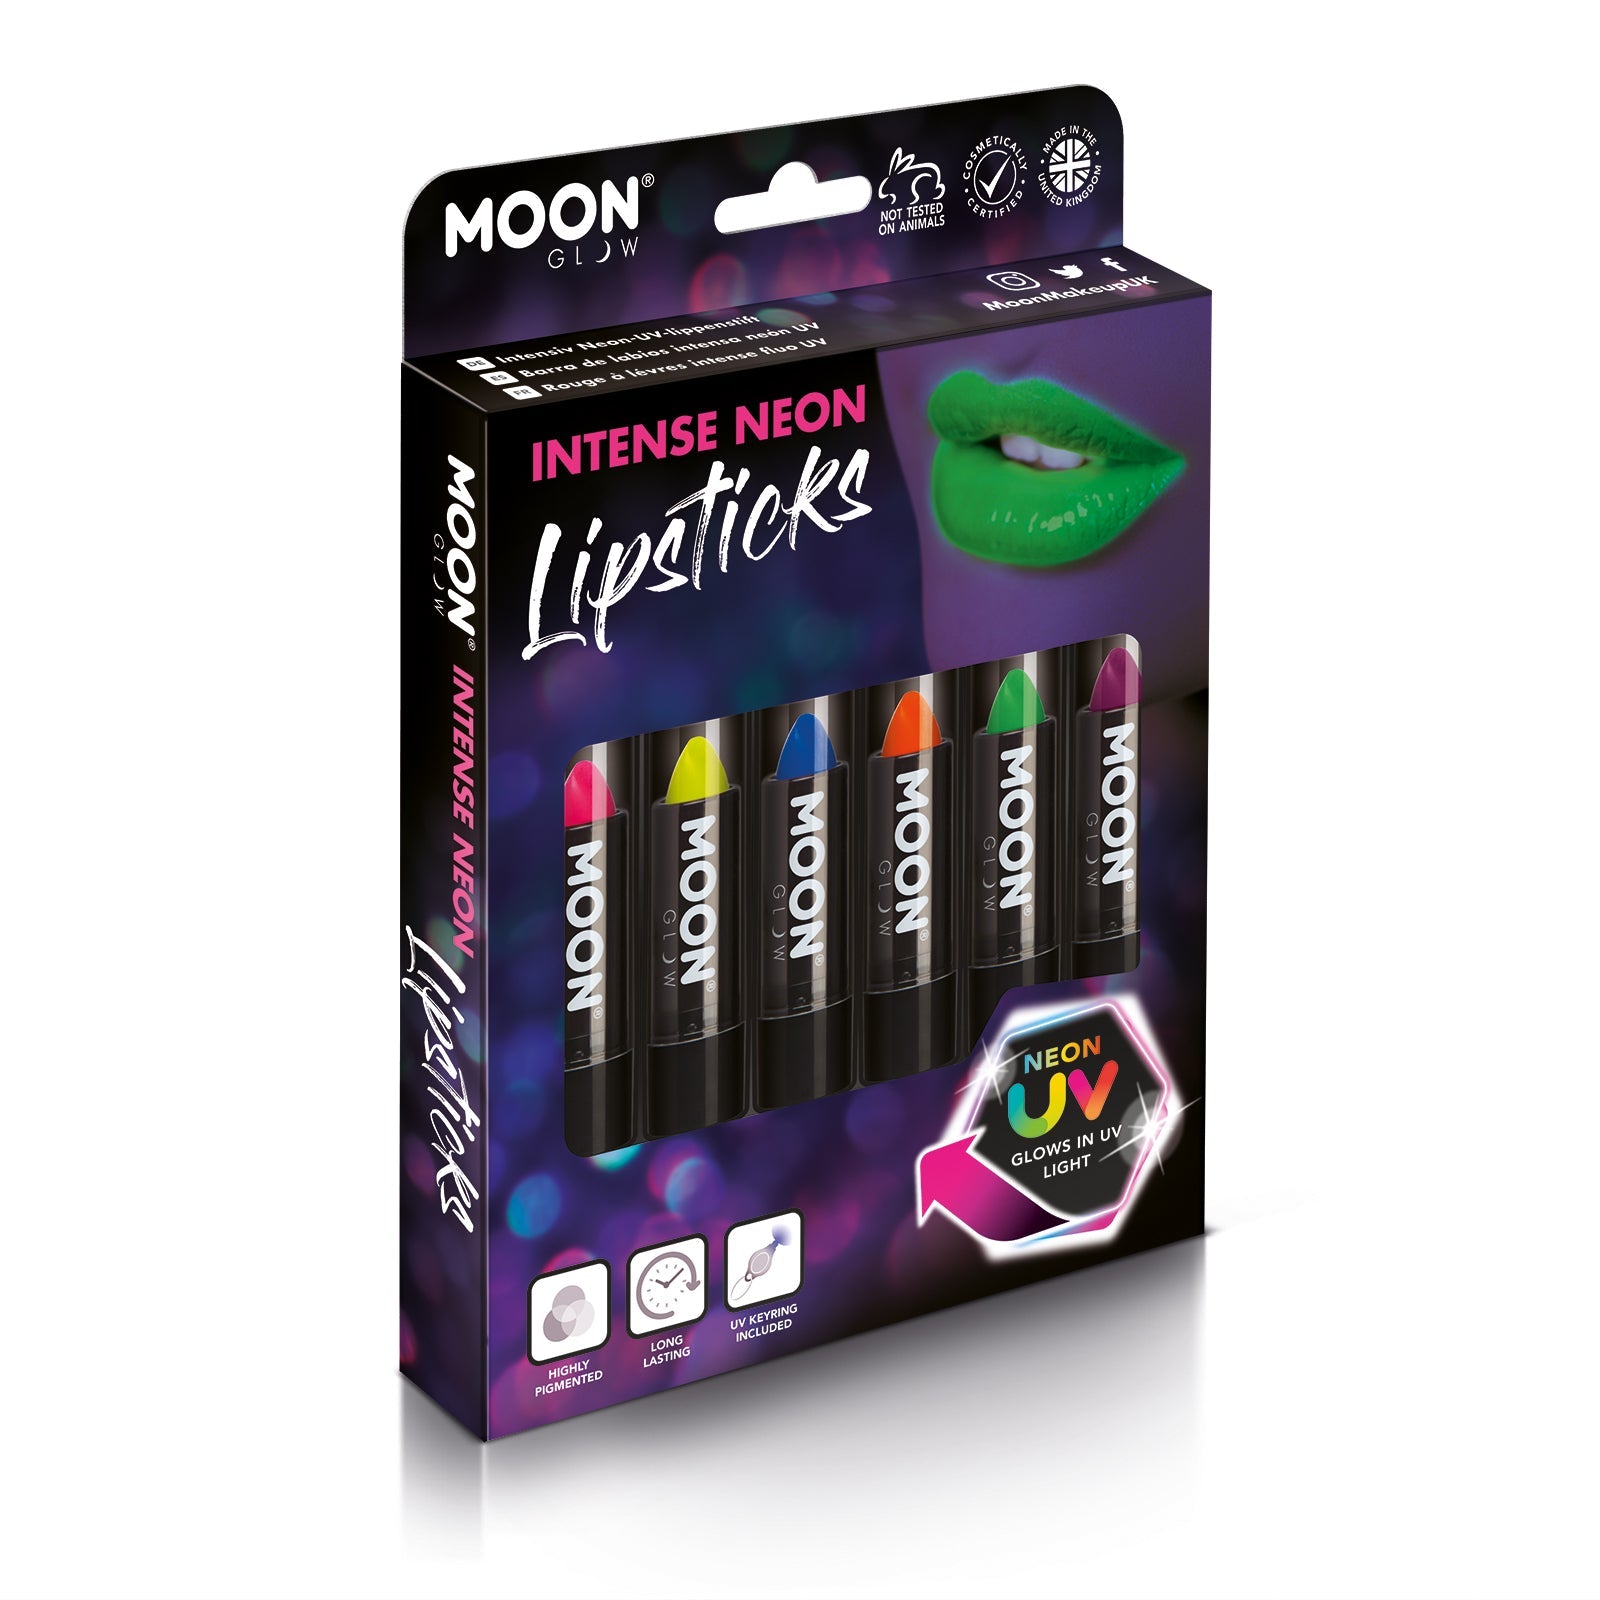 Intense Neon UV Glow Blacklight Lipstick Boxset - 6 lipsticks, UV light. Cosmetically certified, FDA & Health Canada compliant and cruelty free.